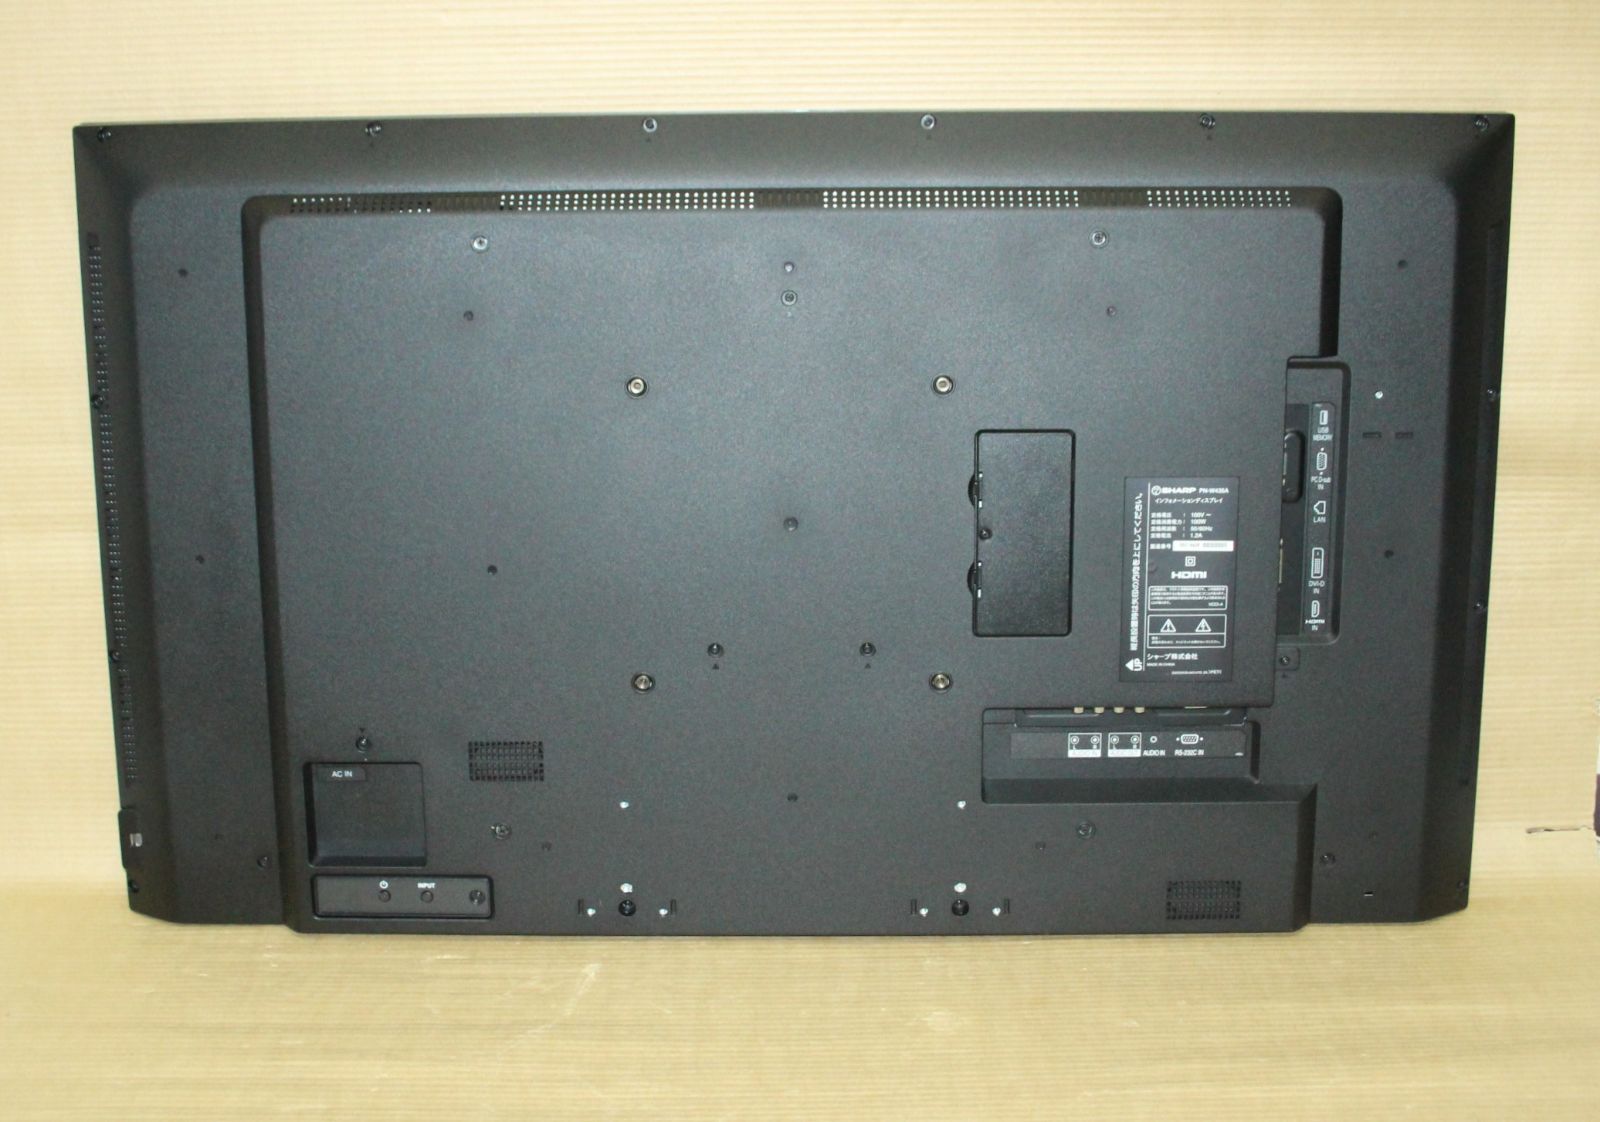 (2)　SHARP　インフォメーションディスプレイ PN-W435A　43V